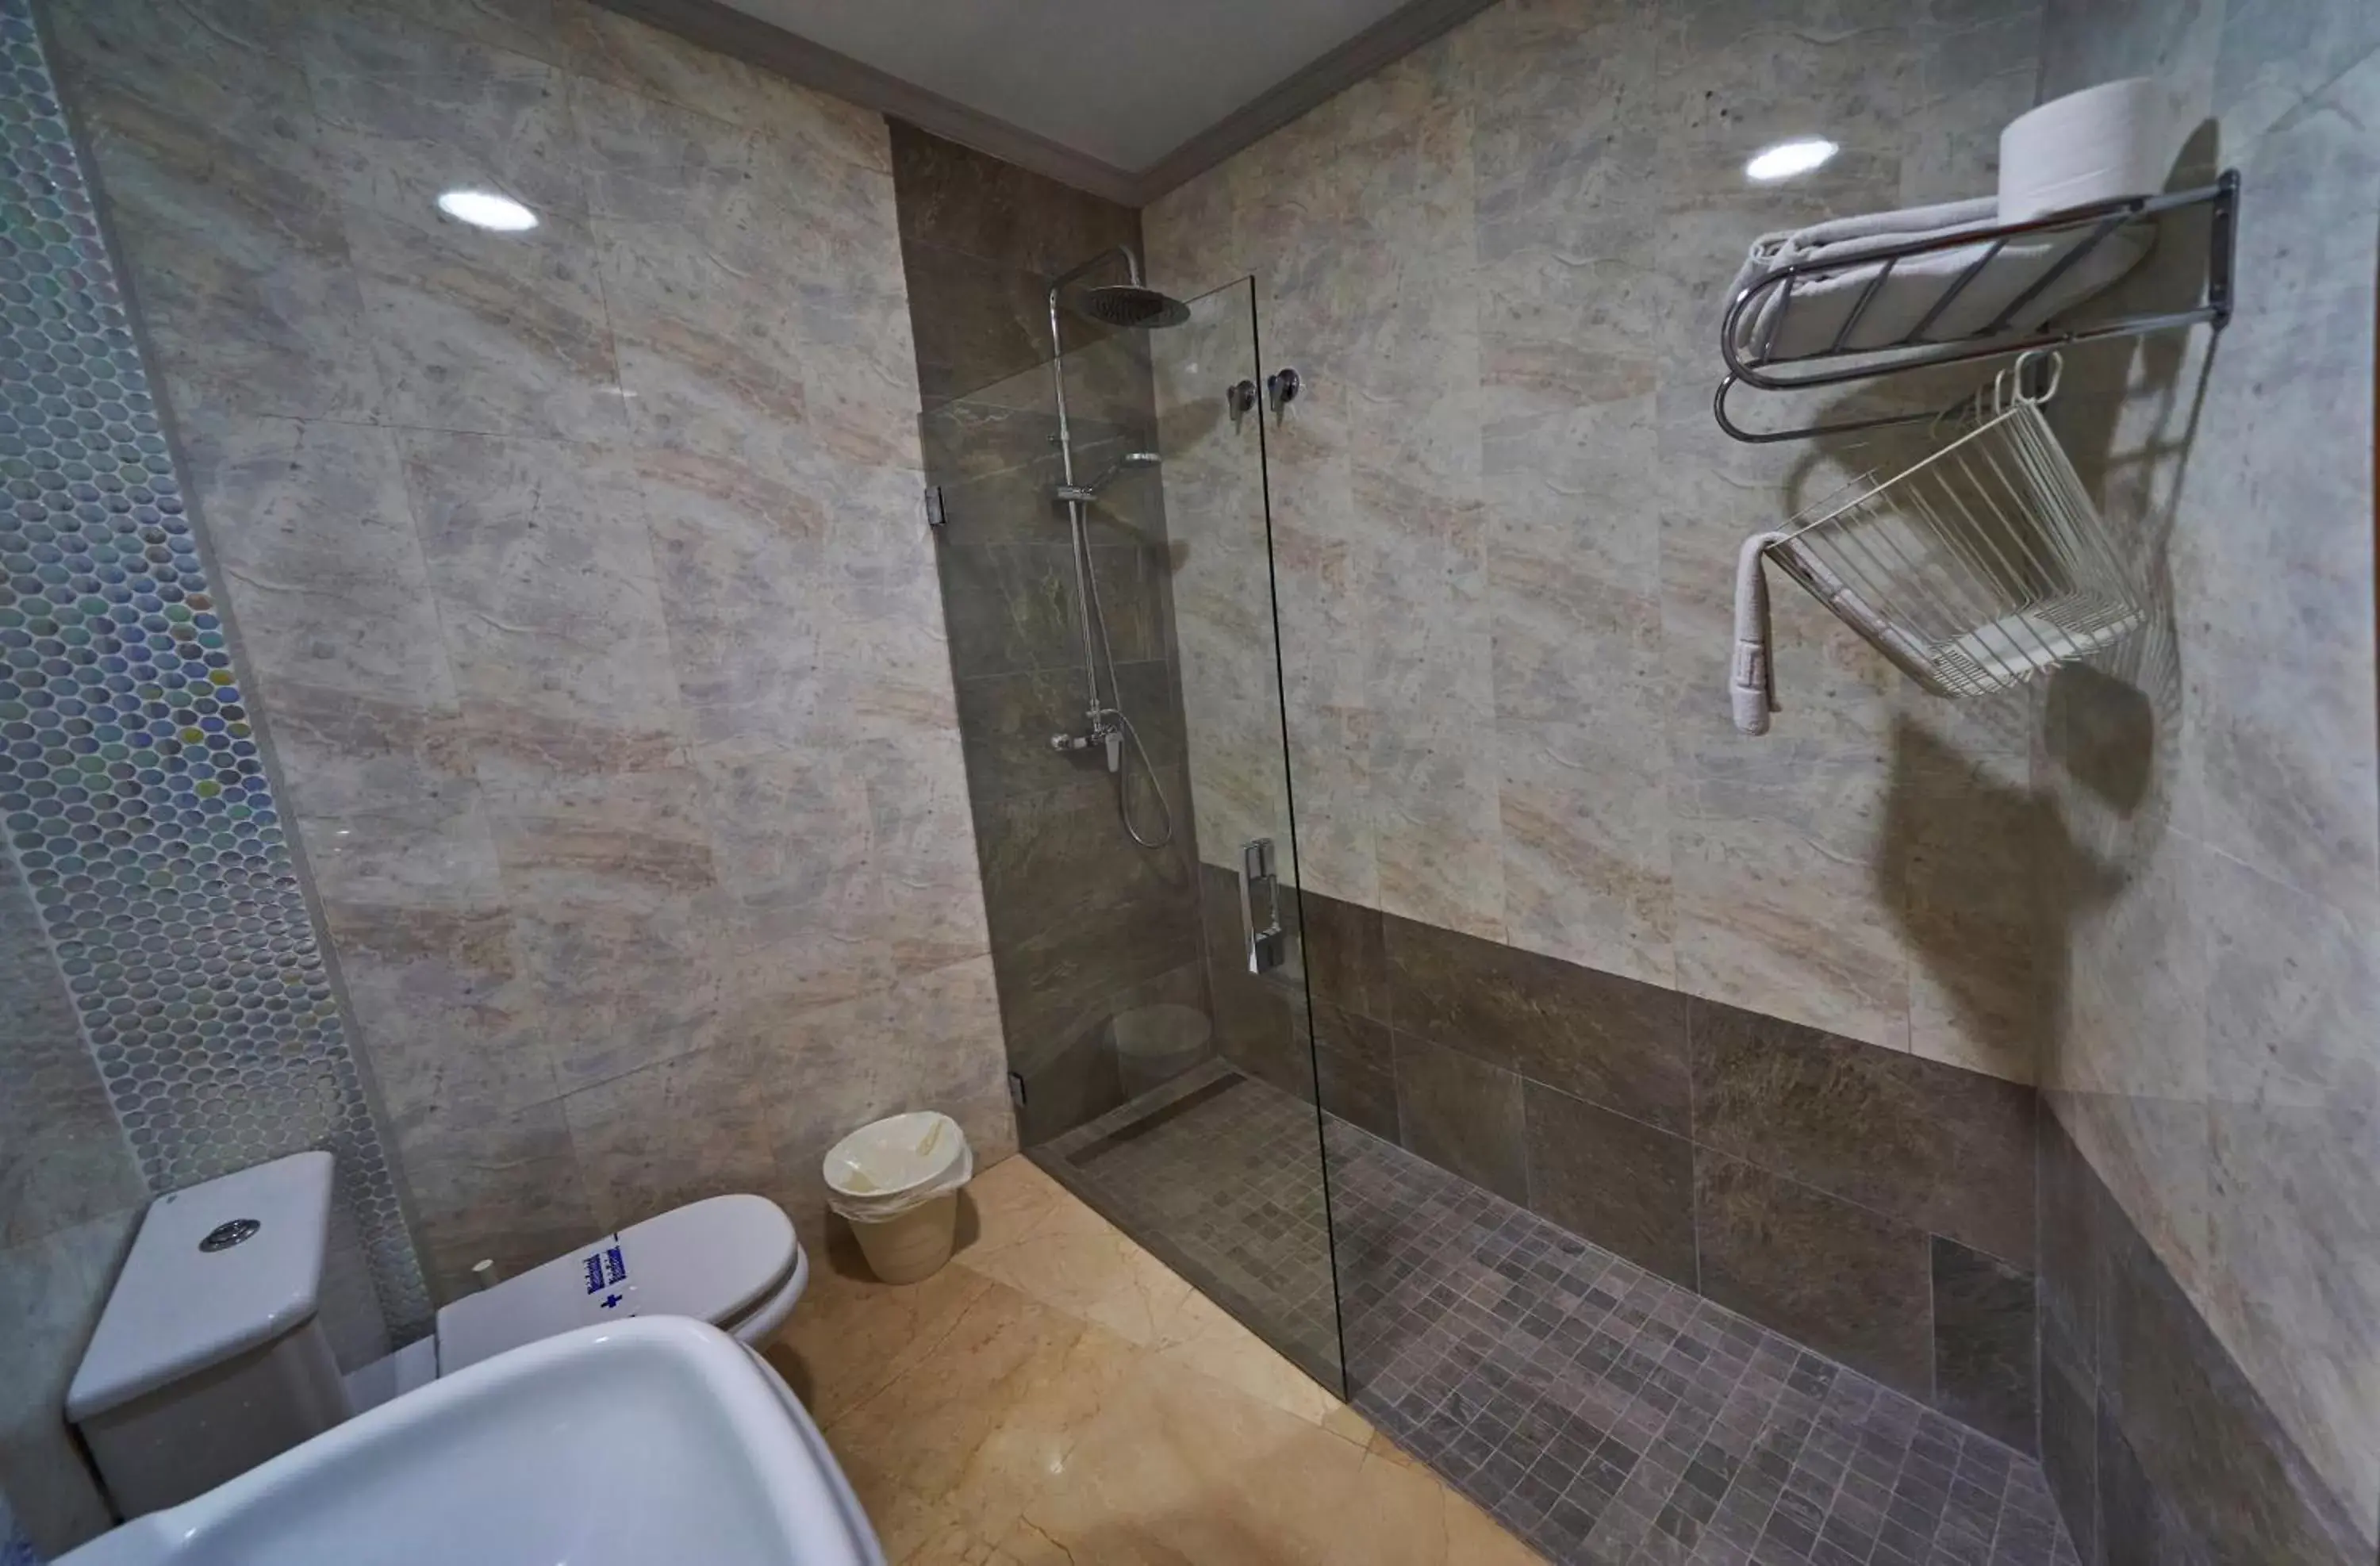 Bathroom in Hotel Bajamar Centro